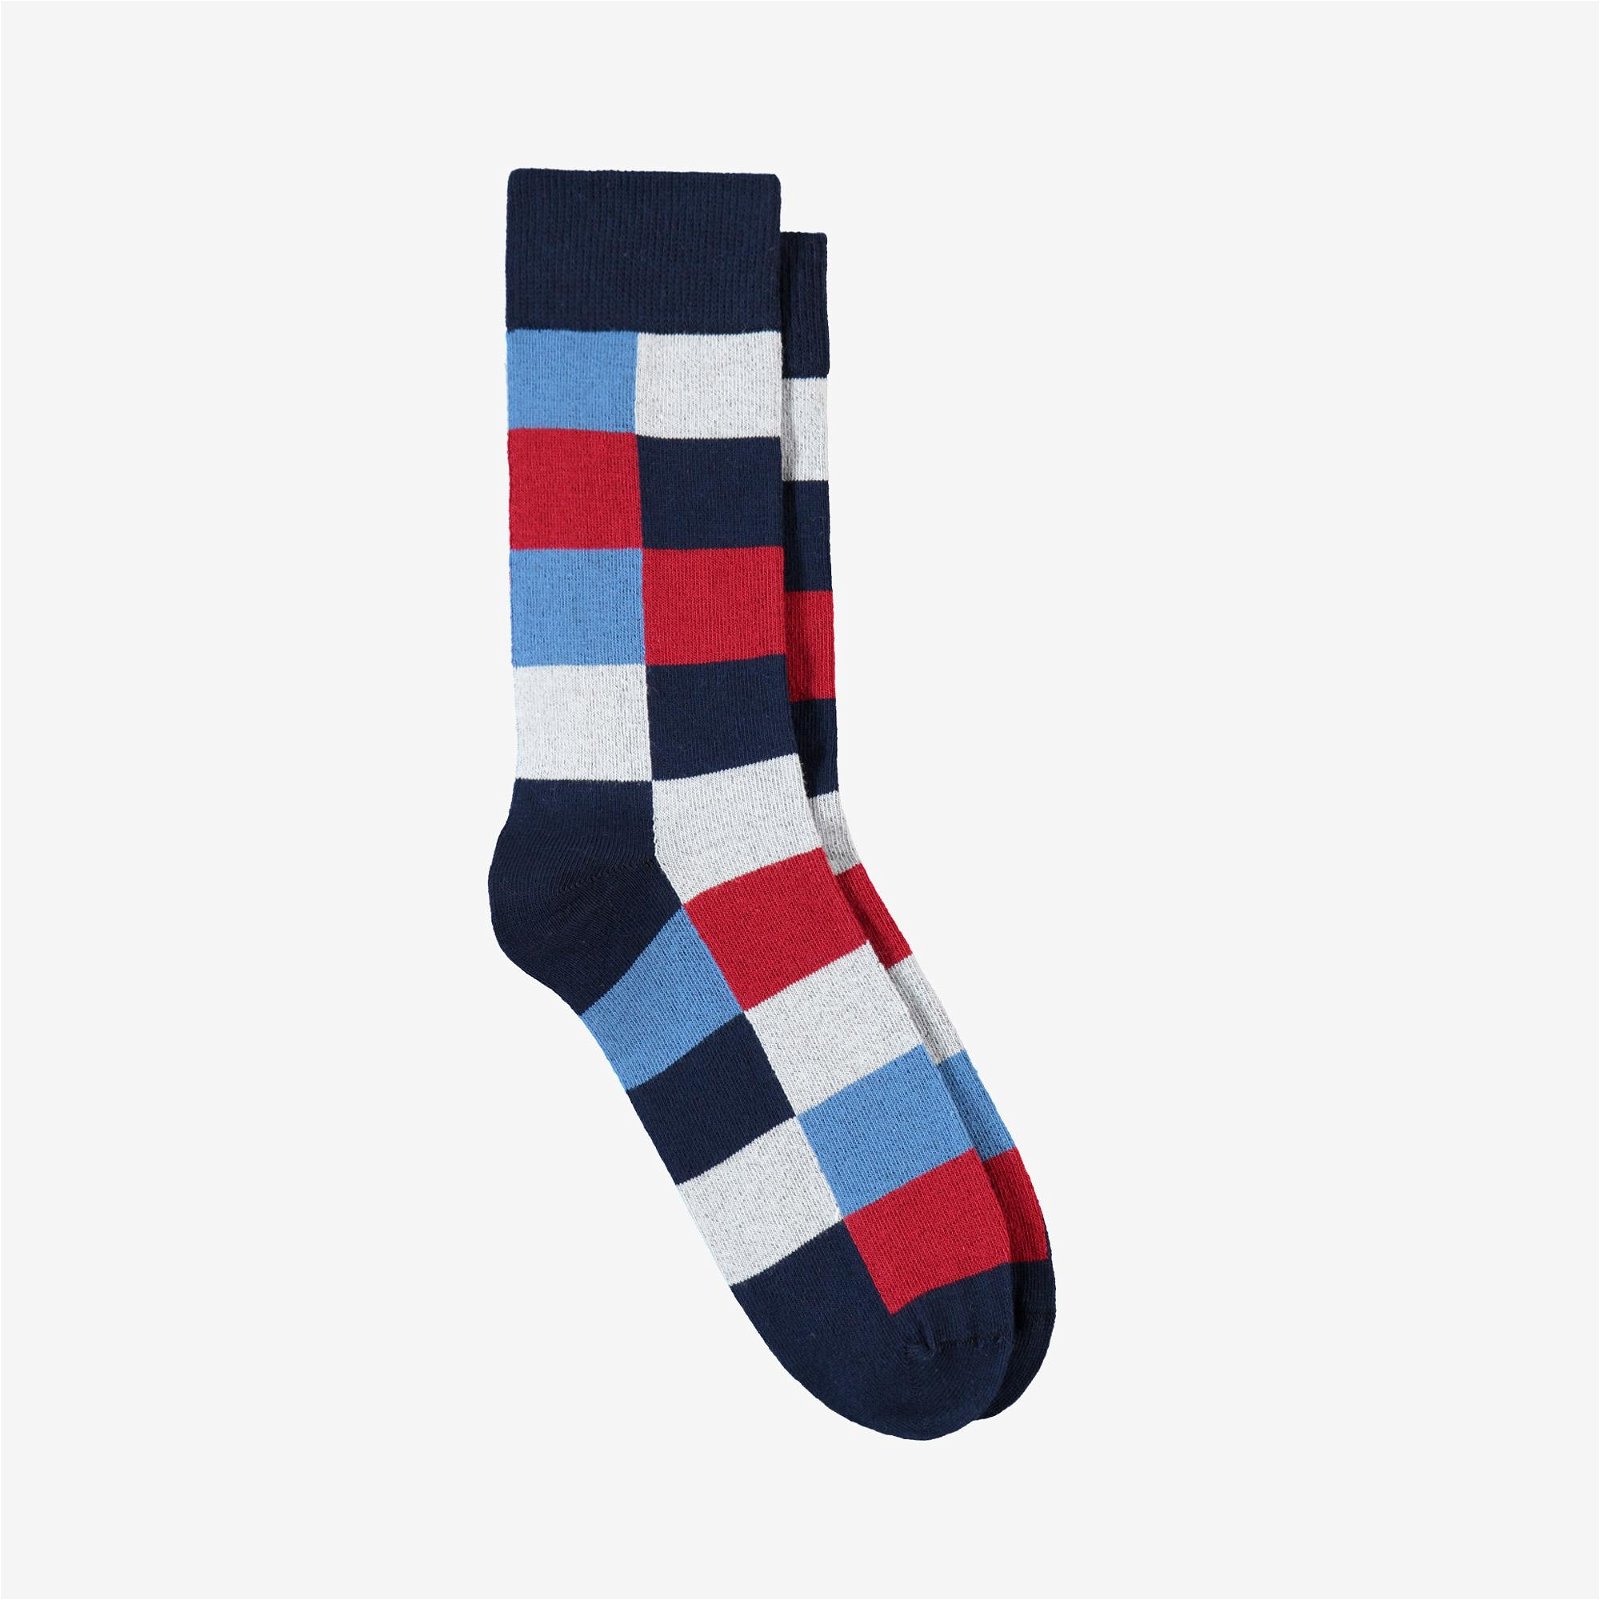 The Socks Company Renkli Dama Desenli Erkek Renkli Çorap